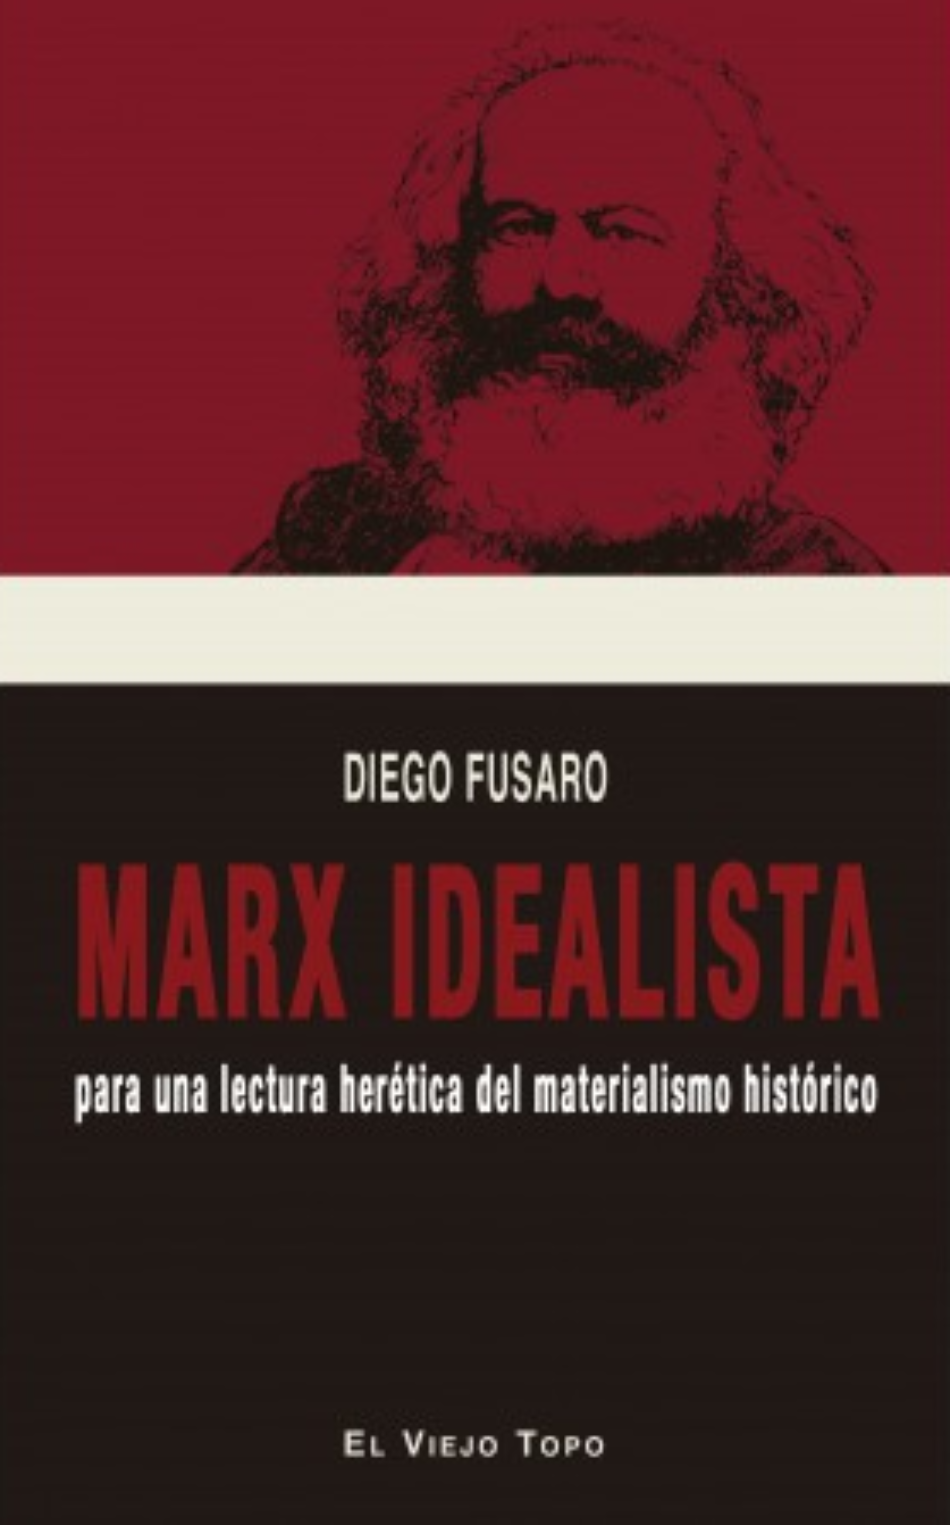 «Marx idealista. Para una lectura herética del materialista histórico»